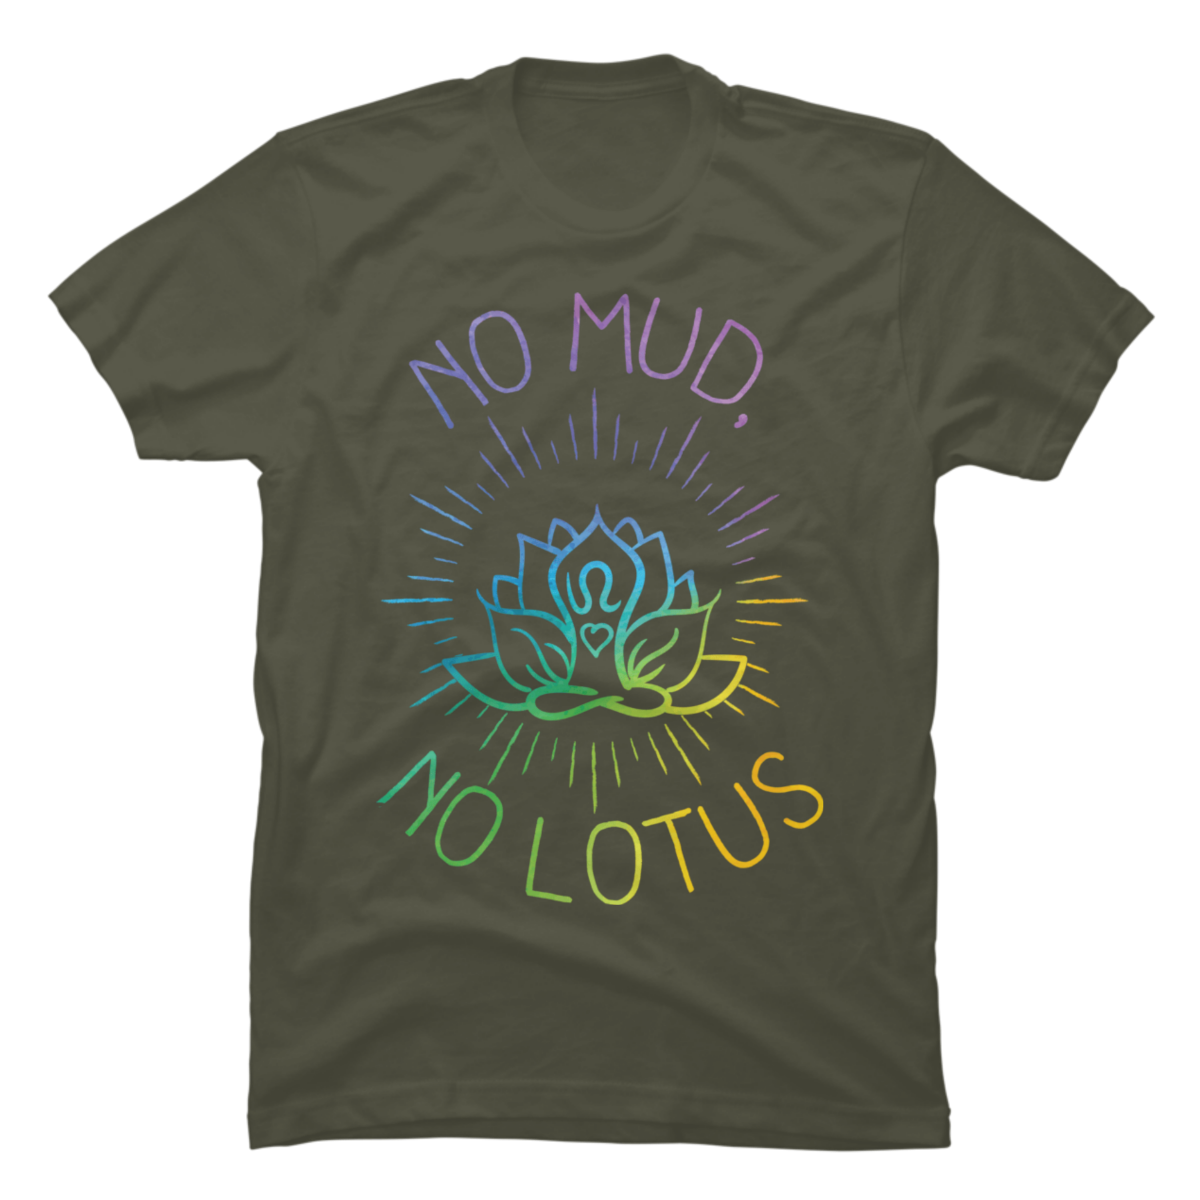 no mud no lotus t shirt